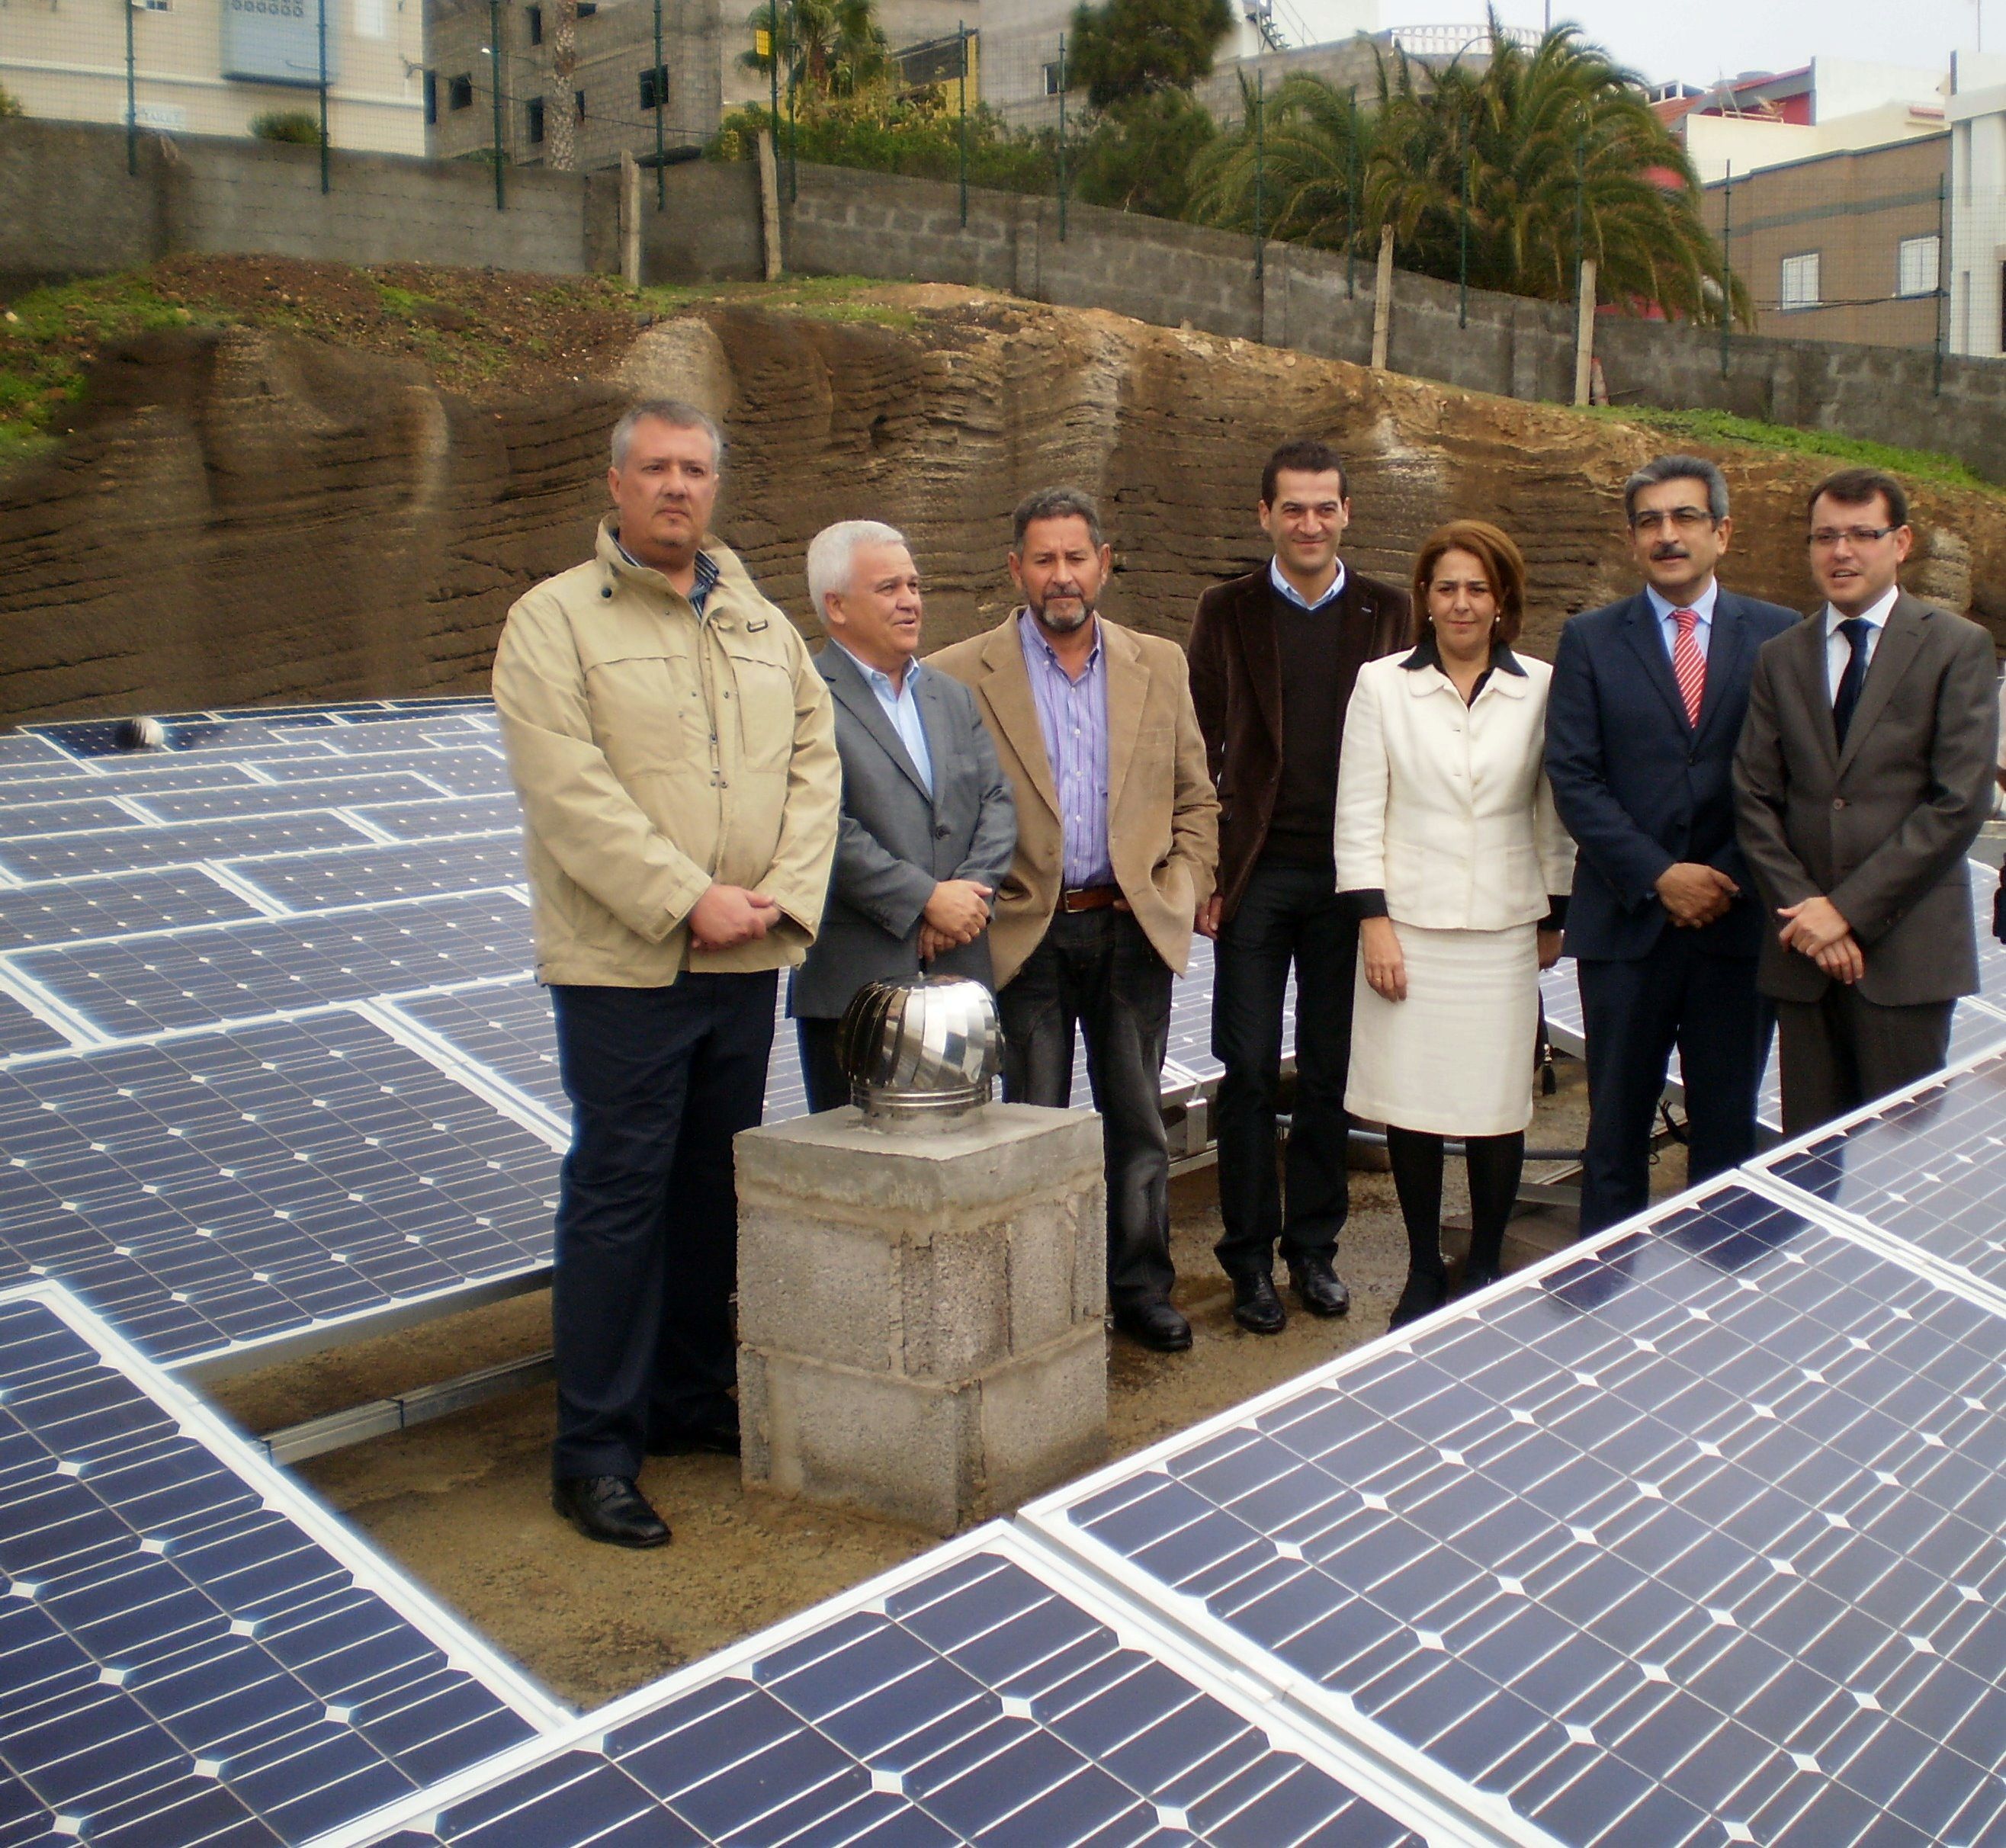 Momento de la inauguración de las placas solares ubicadas en el depósito de aguas de La Montaña.